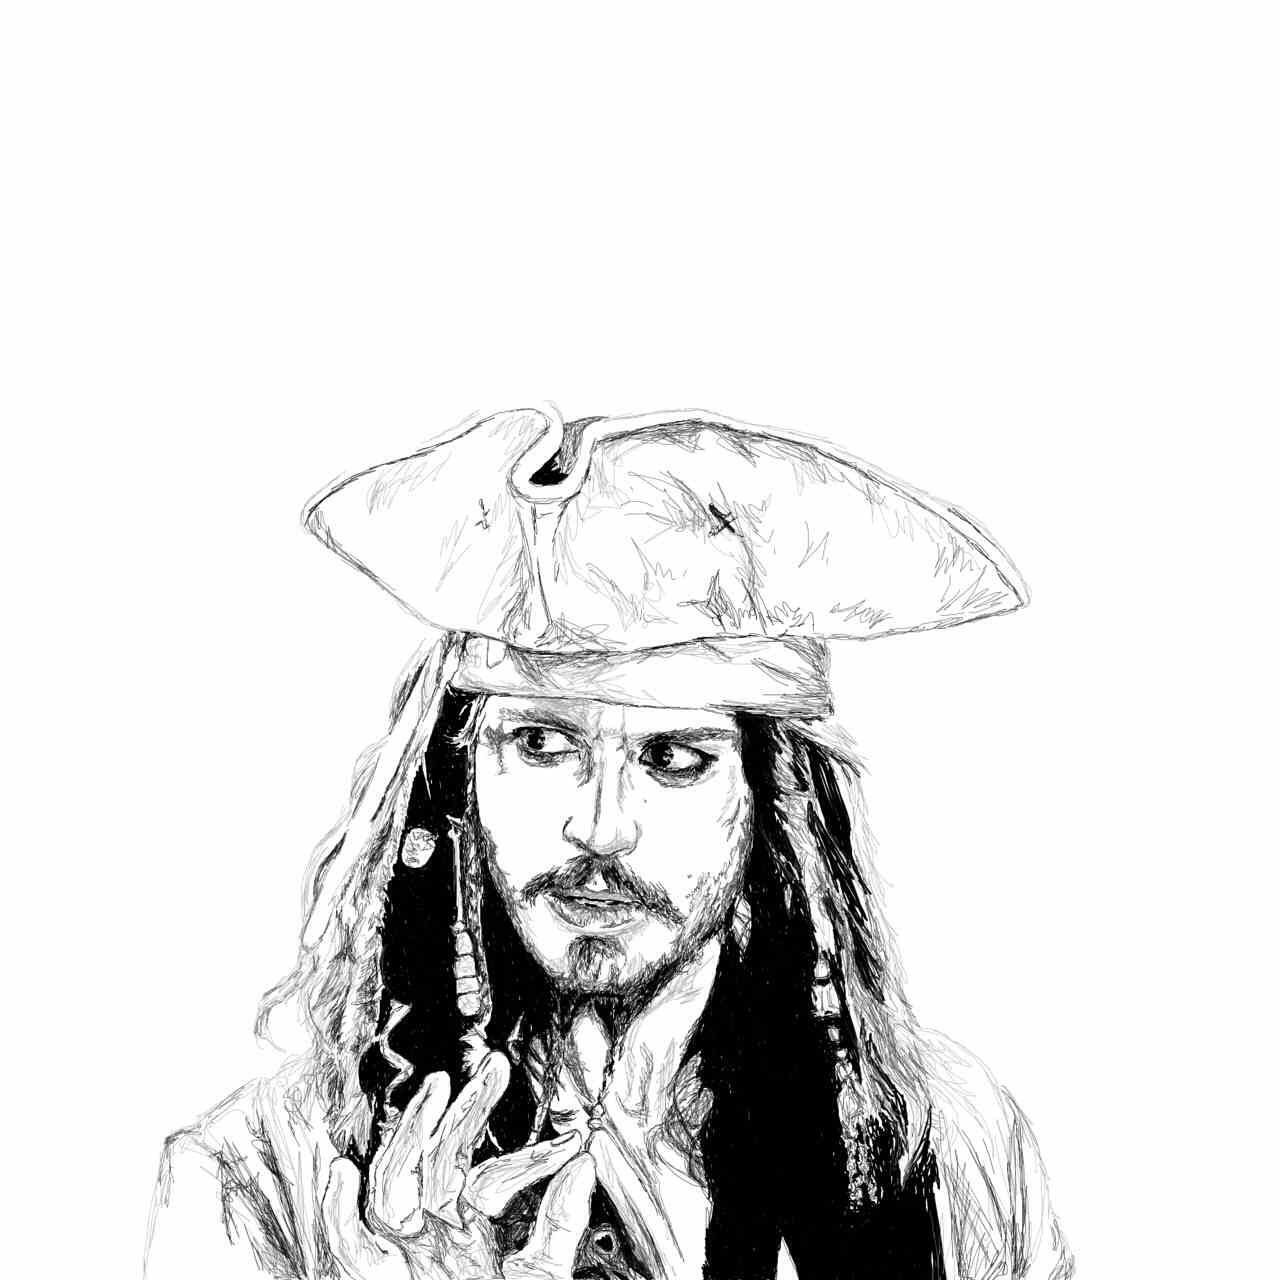 I'M Captain Jack Sparrow. Savvy?